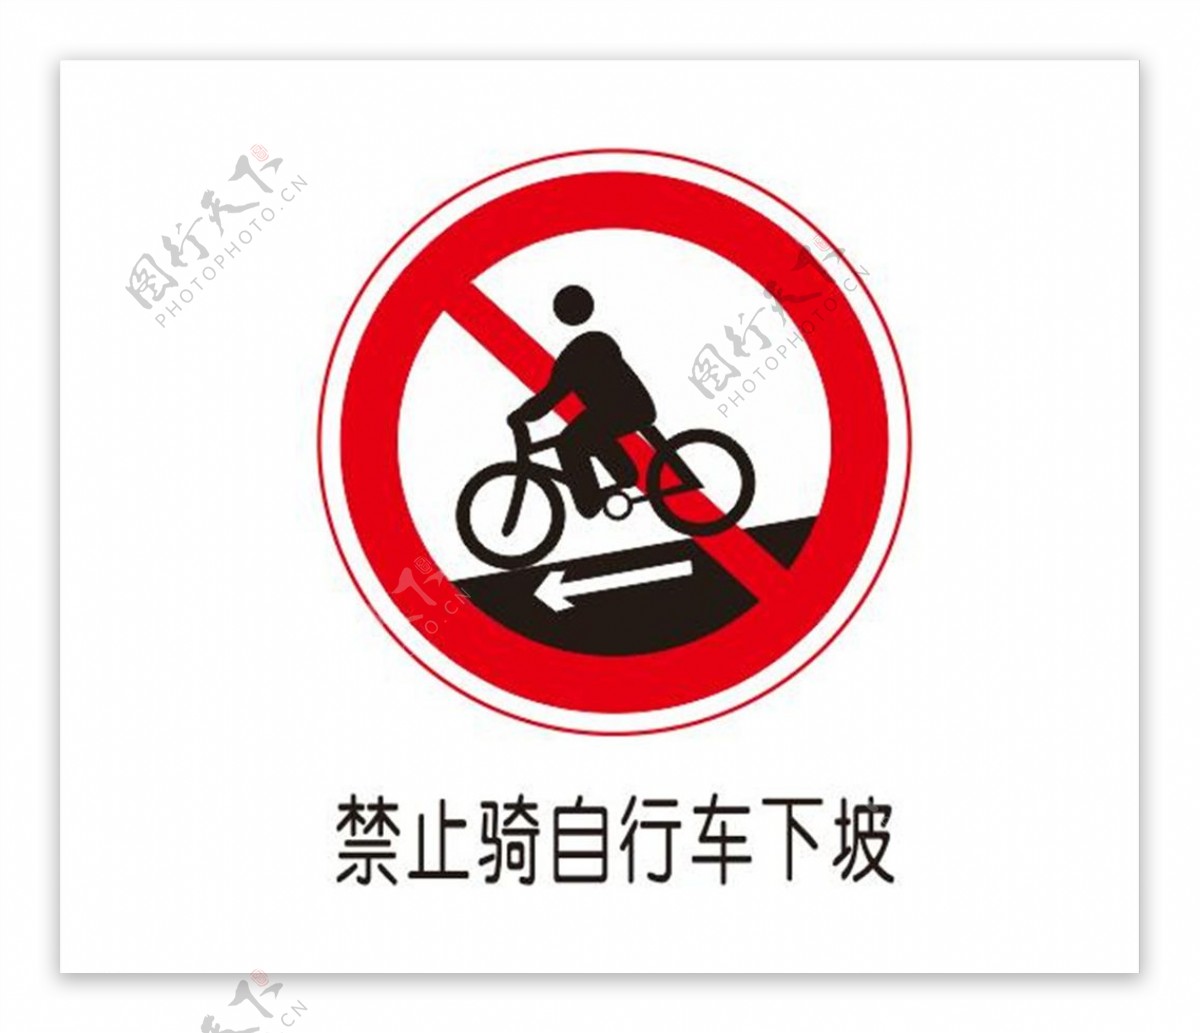 禁止骑自行车下坡图片